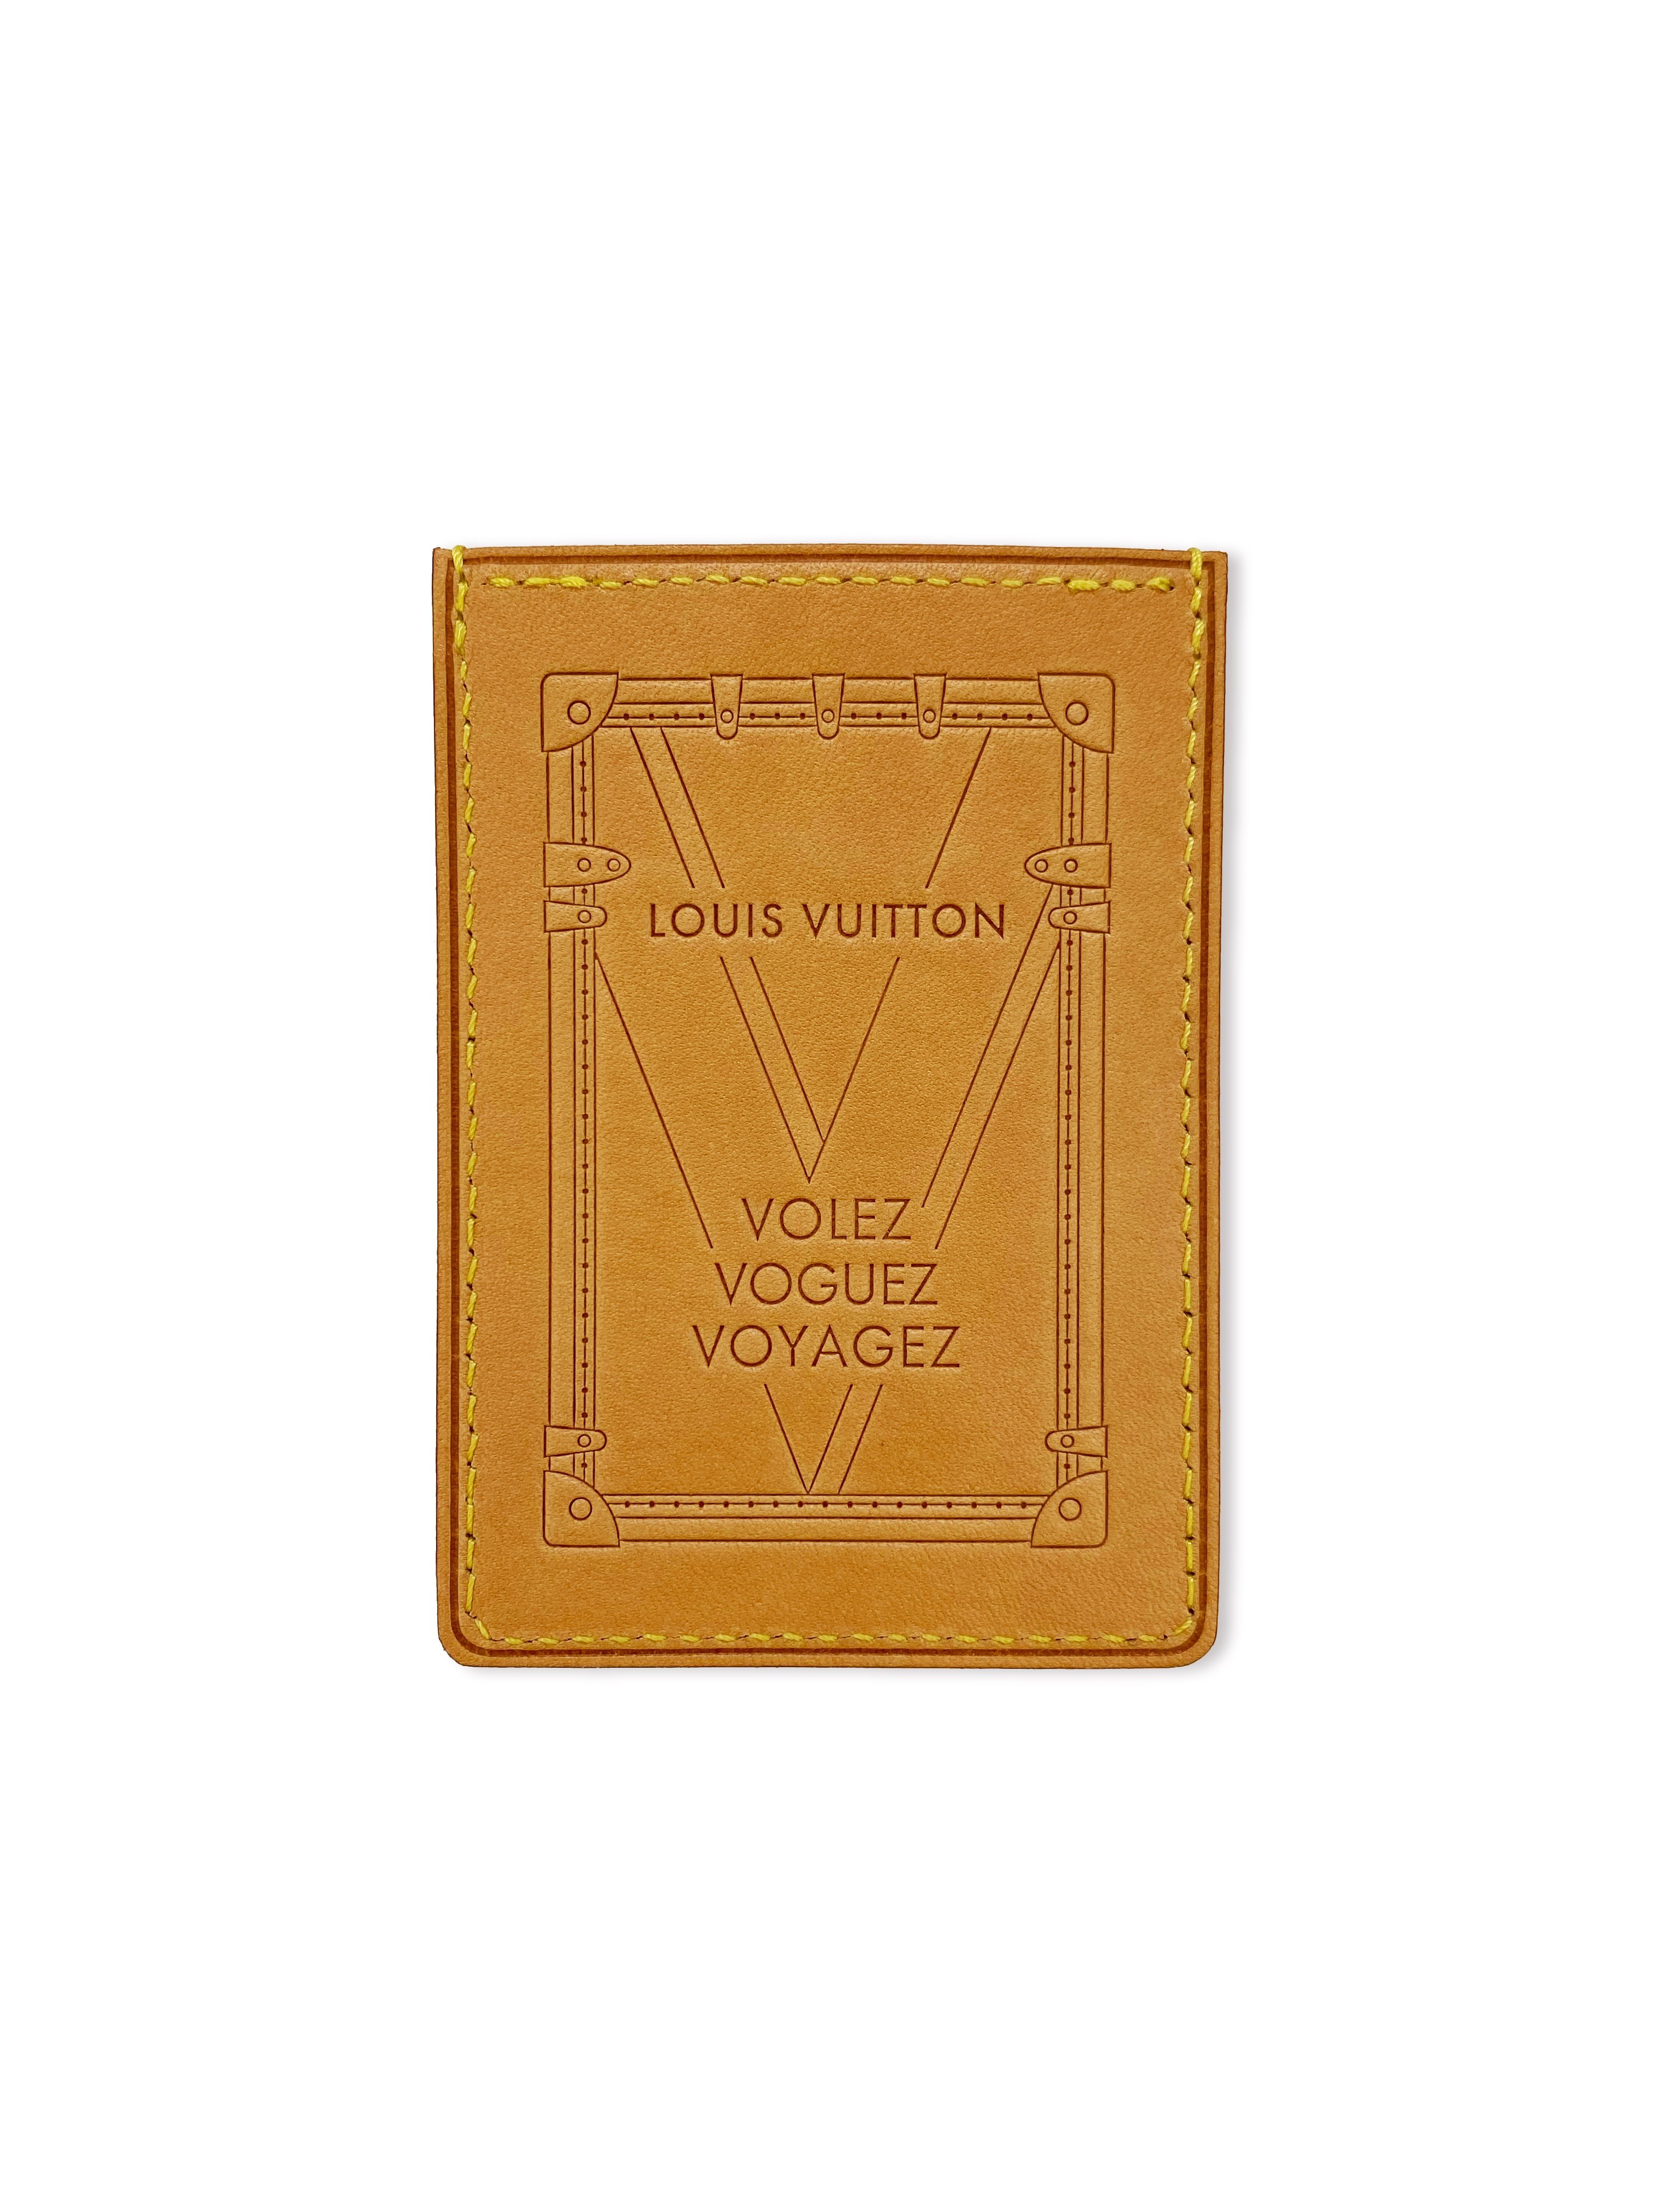 Louis Vuitton: Volez Voguez Voyagez